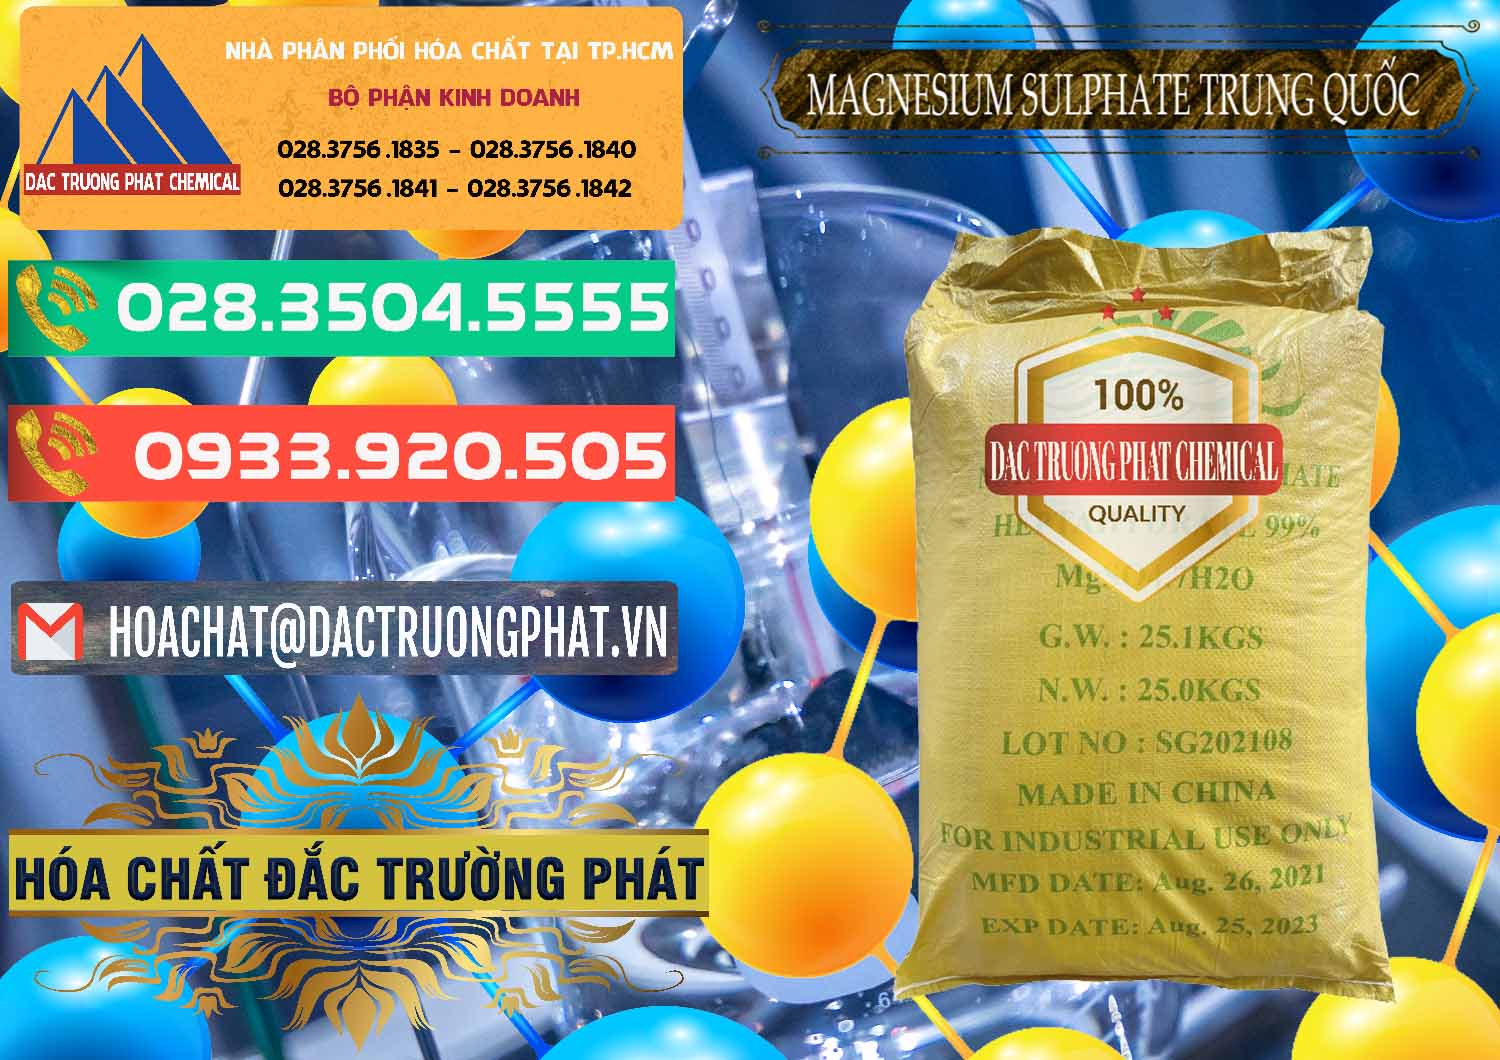 Cty chuyên kinh doanh _ bán MGSO4.7H2O – Magnesium Sulphate Heptahydrate 99% Trung Quốc China - 0440 - Chuyên kinh doanh - phân phối hóa chất tại TP.HCM - congtyhoachat.com.vn